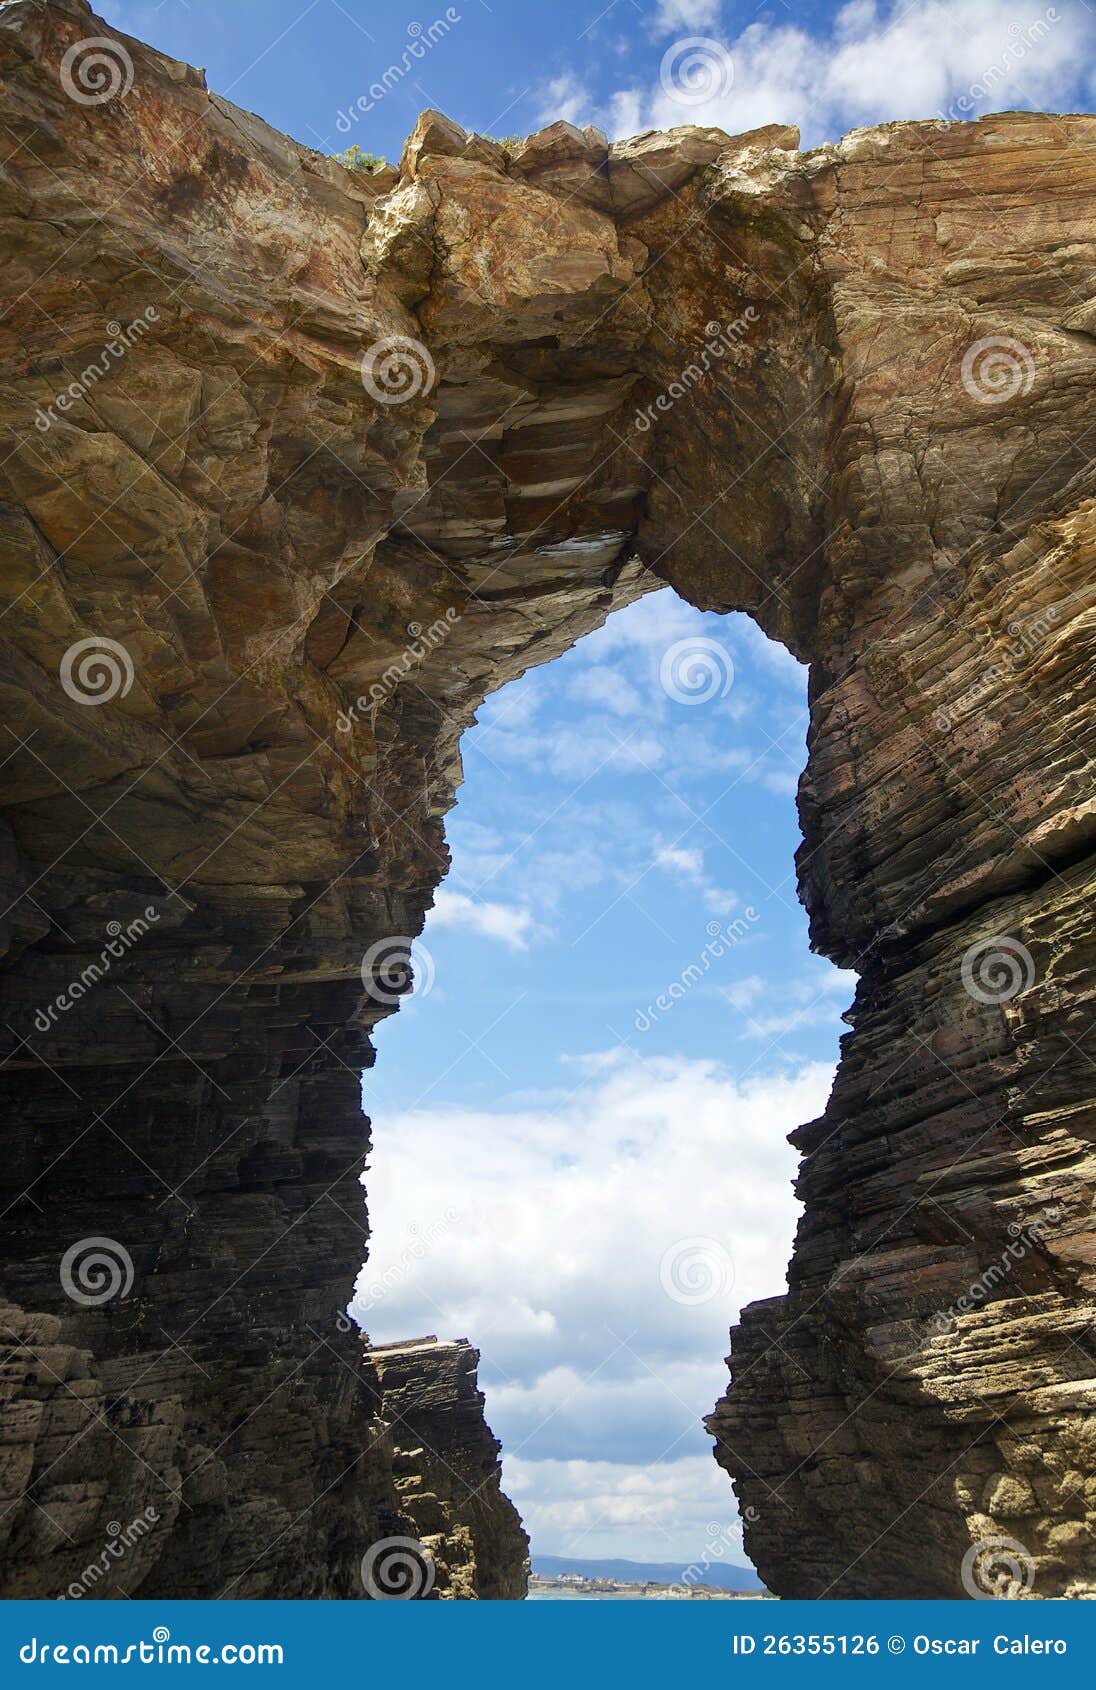 rock arch at playa de las catedrales